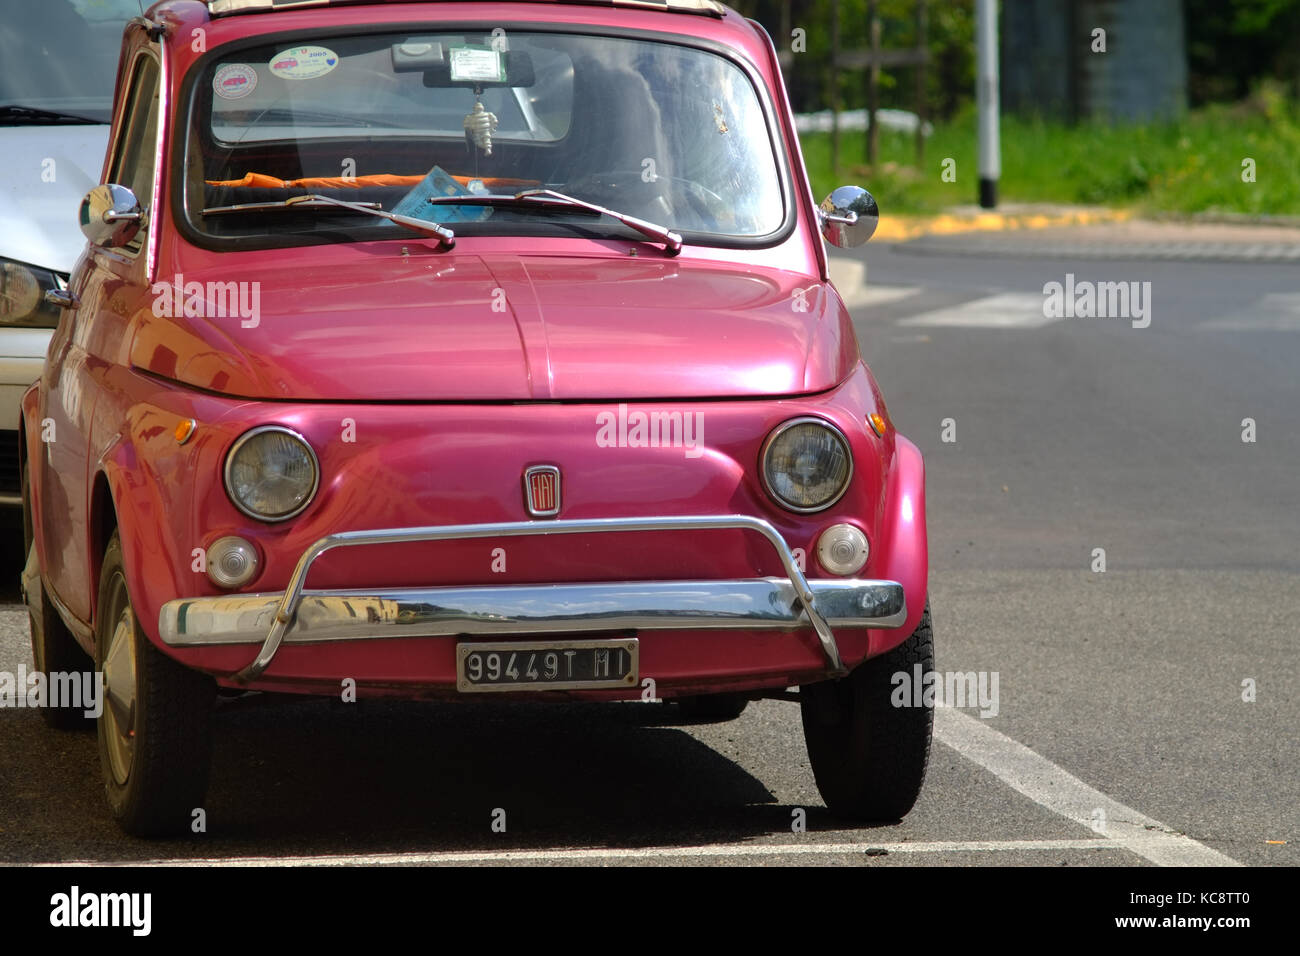 Rosa Lila Fiat 500 auf der Straße geparkt. Classic vintage Modell. Florenz, Italien Stockfoto